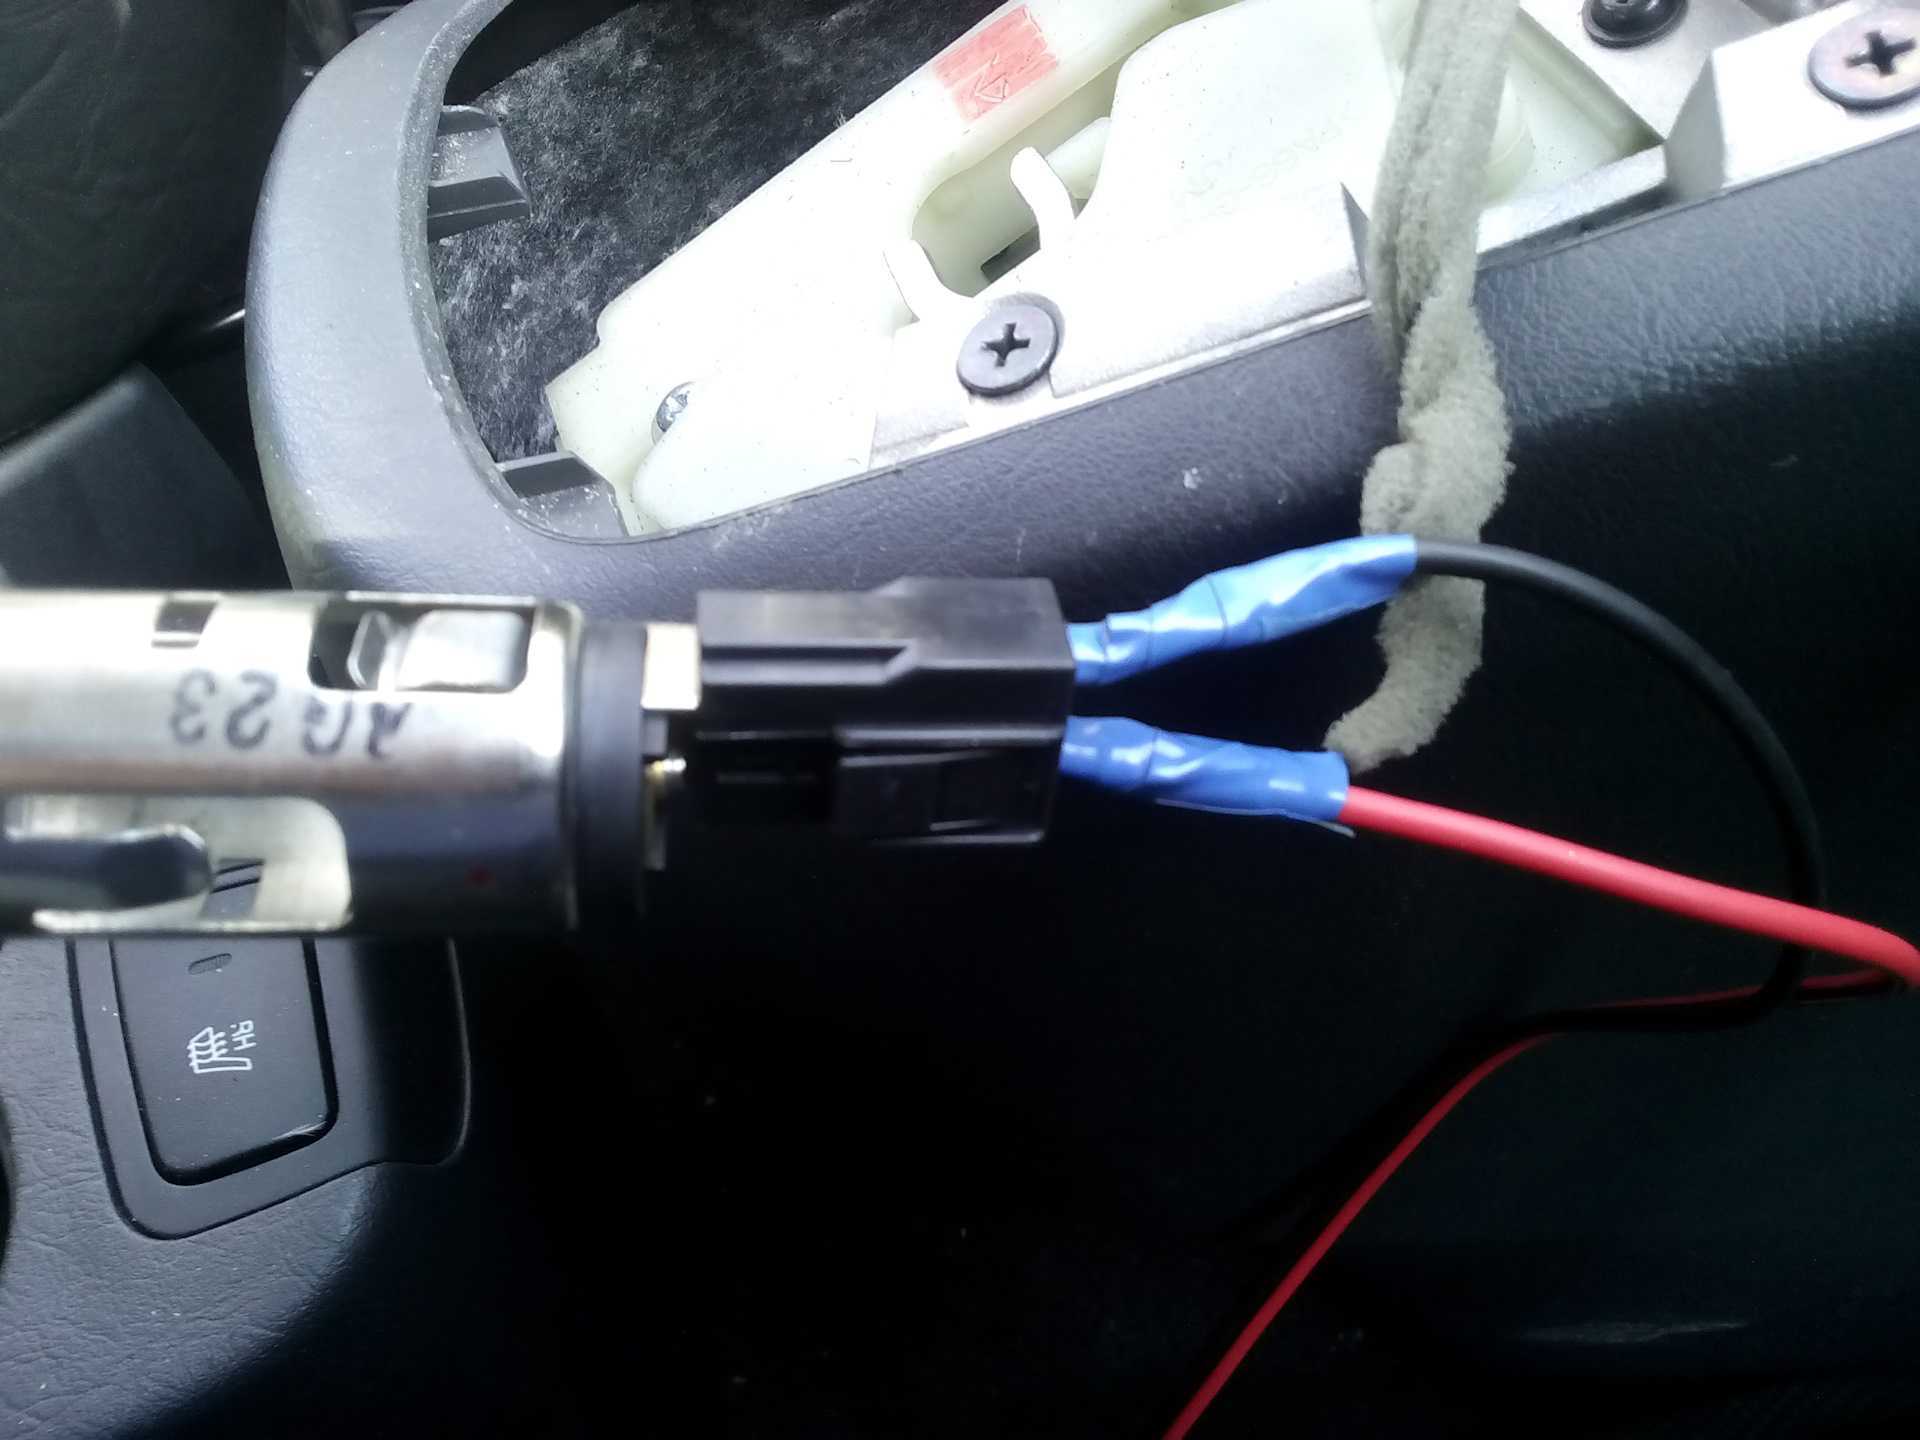 Как подключить видеорегистратор в машине без прикуривателя